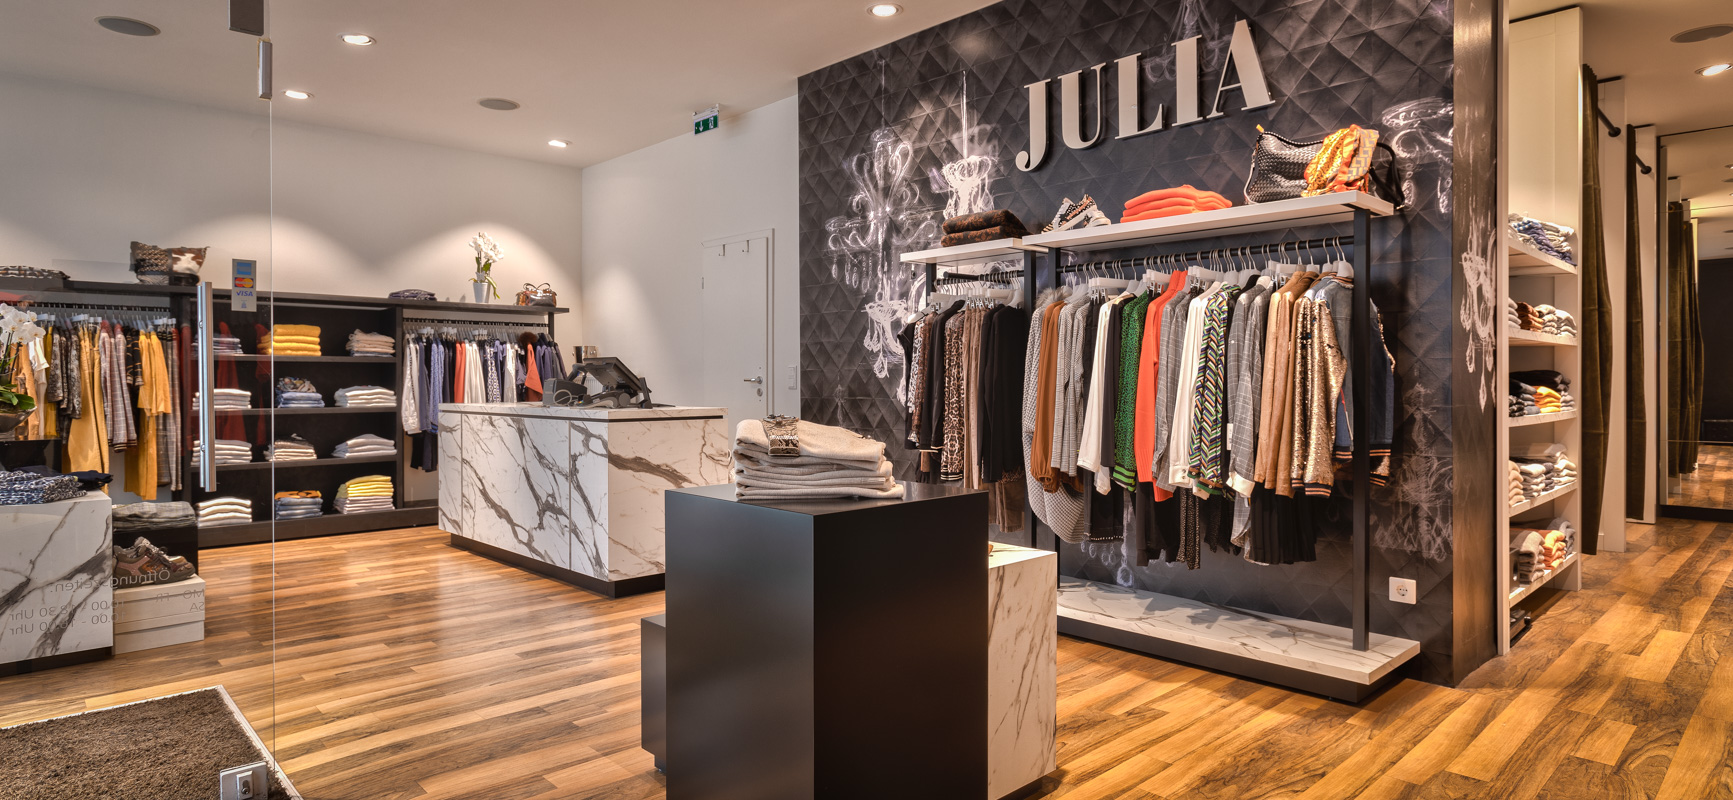 Boutique Julia | Hattingen - 